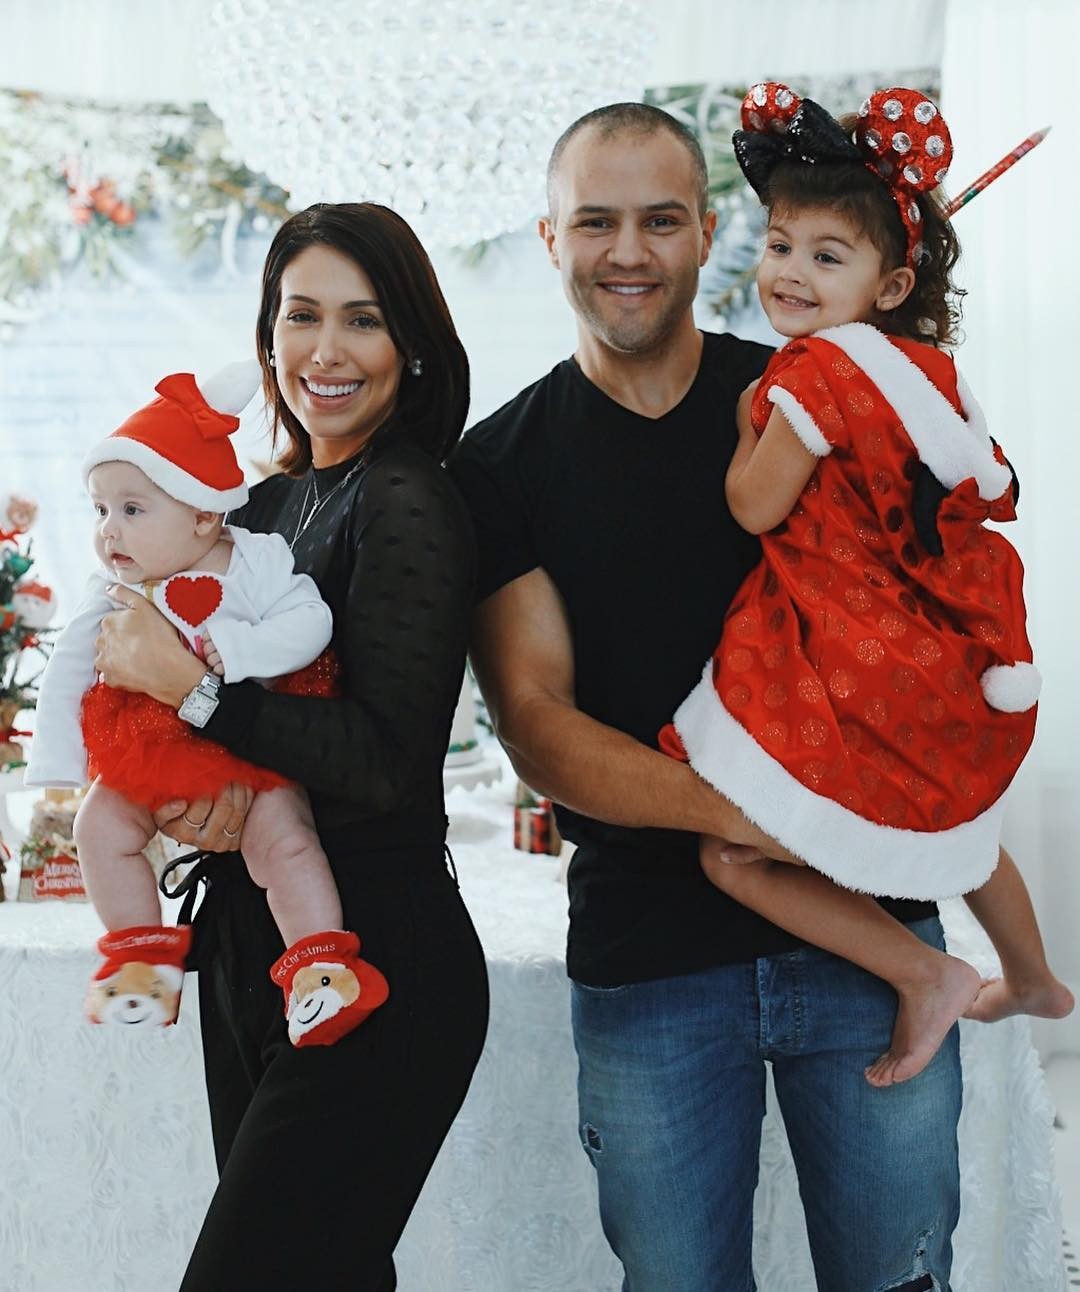 Bella Falconi posa com a família em clima natalino (Foto: reprodução/Instagram)